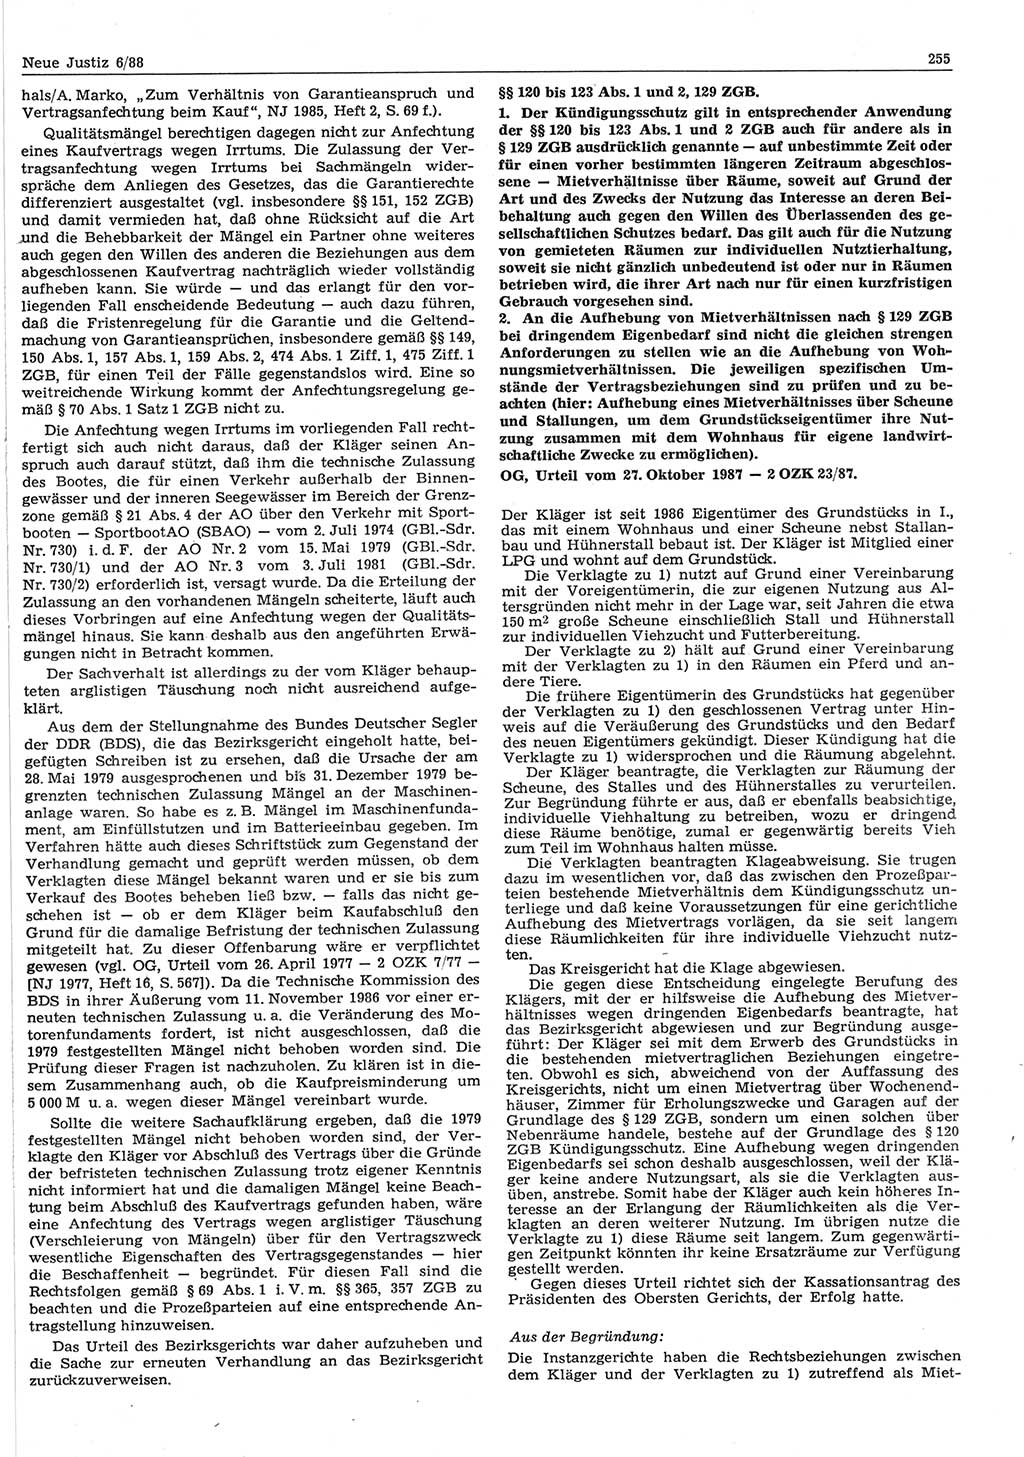 Neue Justiz (NJ), Zeitschrift für sozialistisches Recht und Gesetzlichkeit [Deutsche Demokratische Republik (DDR)], 42. Jahrgang 1988, Seite 255 (NJ DDR 1988, S. 255)